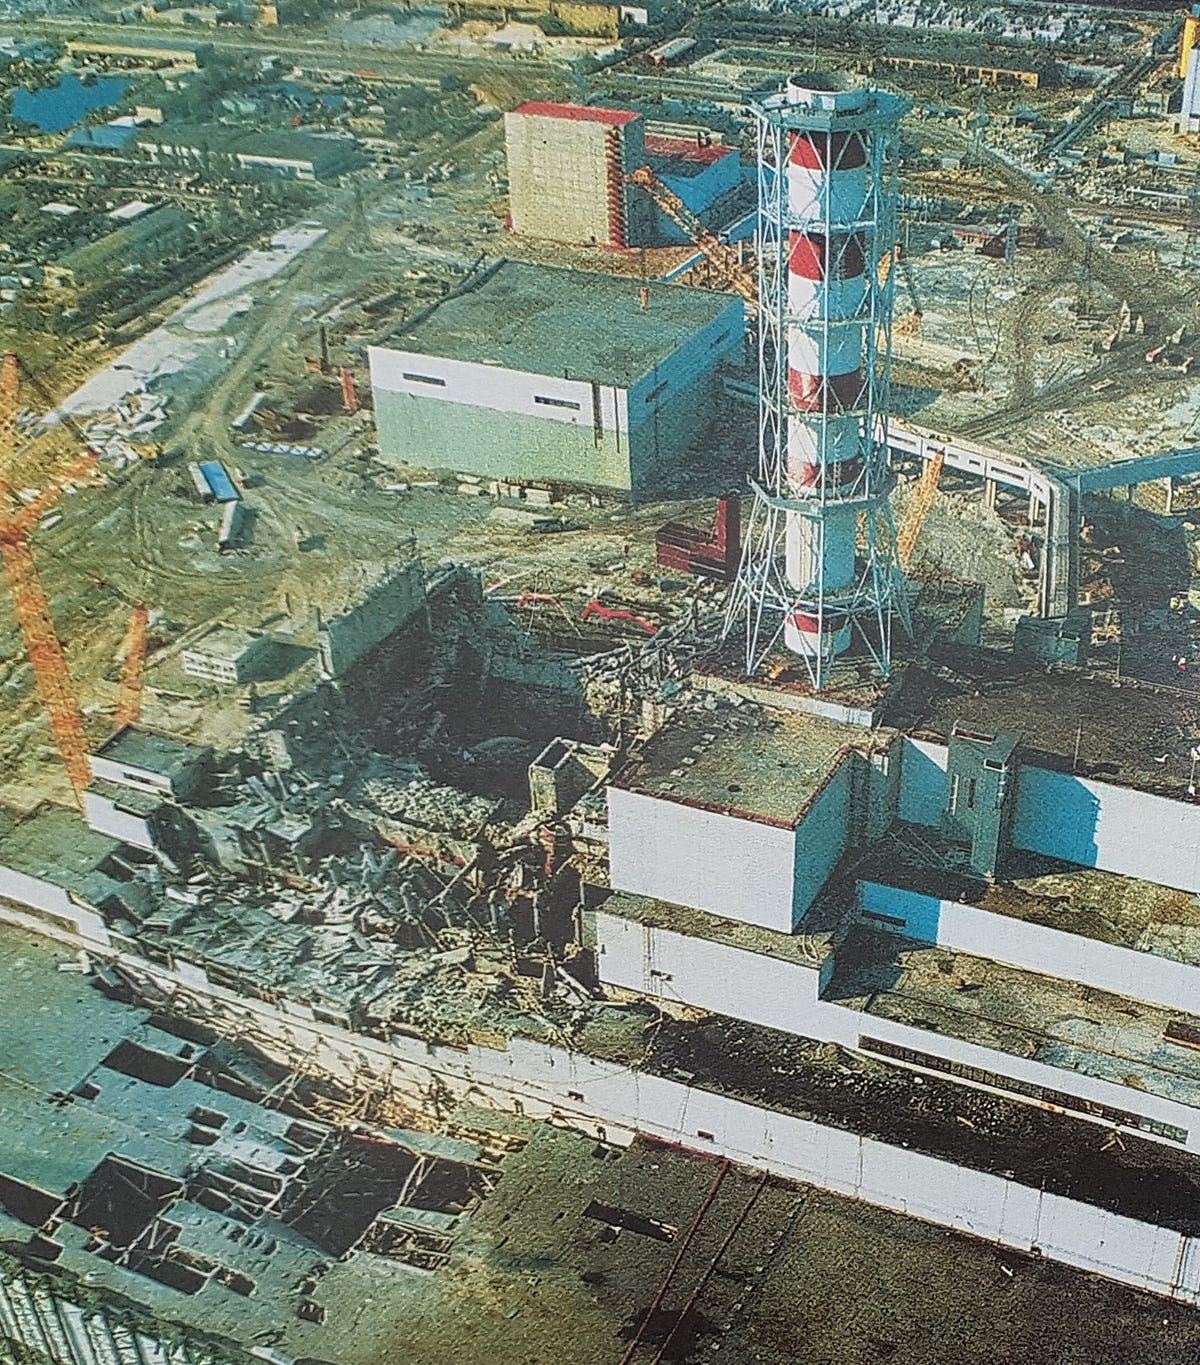 В каком году случилась чернобыльская аэс. 4 Энергоблок Чернобыльской АЭС 1986. Авария на Чернобыльской АЭС. 26 Апреля 1986 года, Припять. ЧАЭС реактор 1986. 4 Энергоблок ЧАЭС 1986 года 26 апреля.